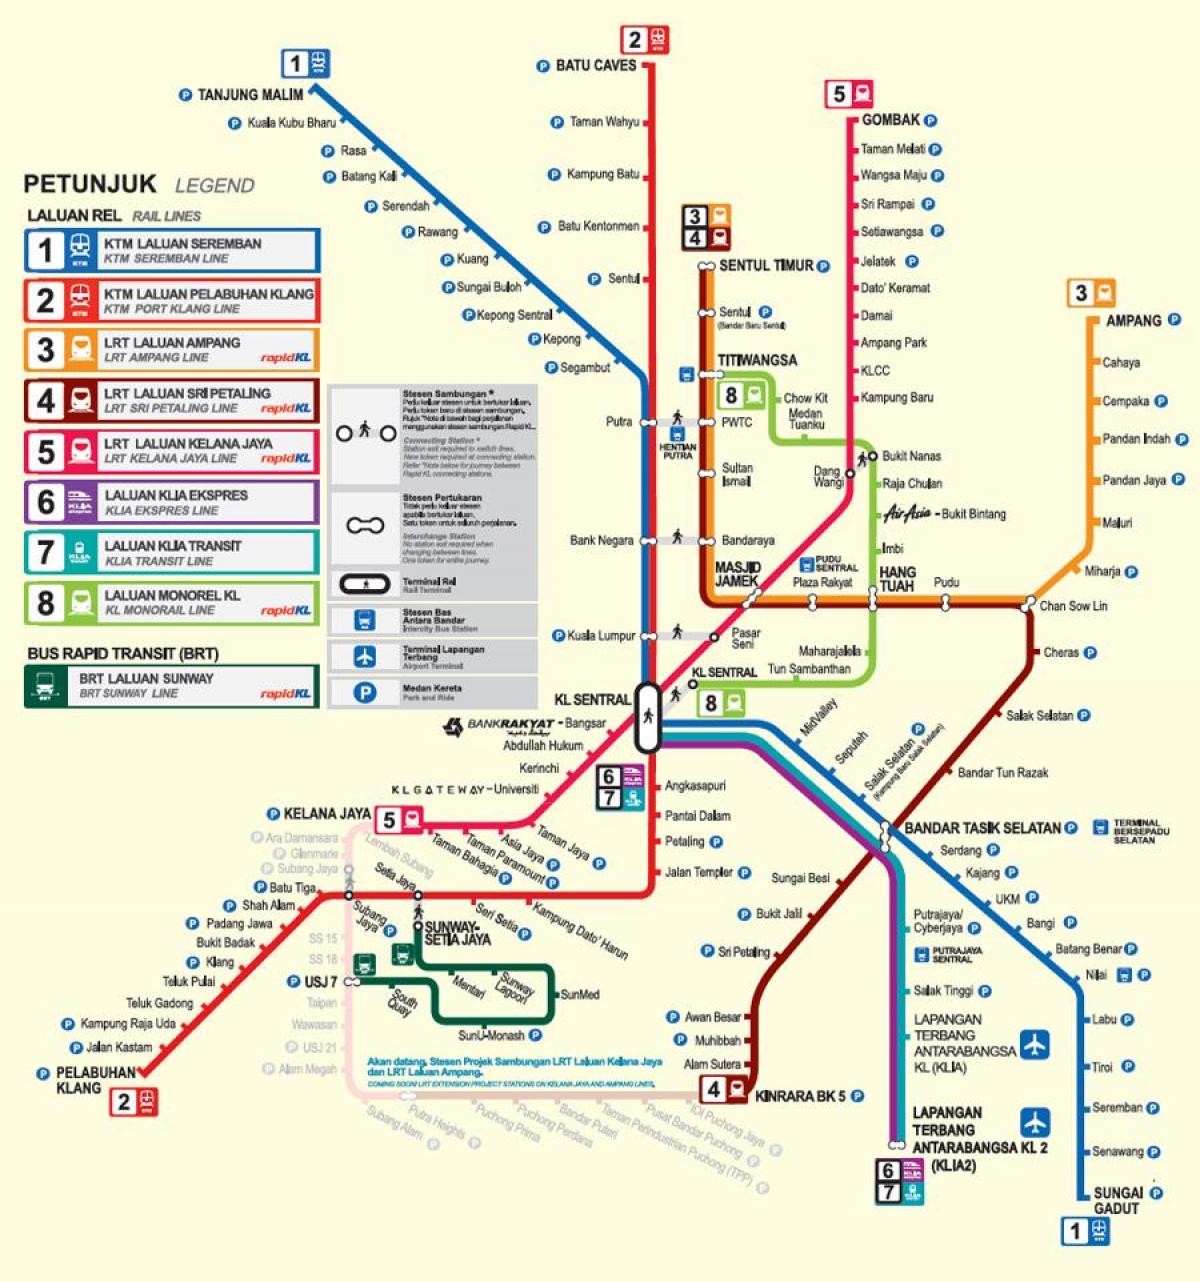 LRT mapa trasy KL